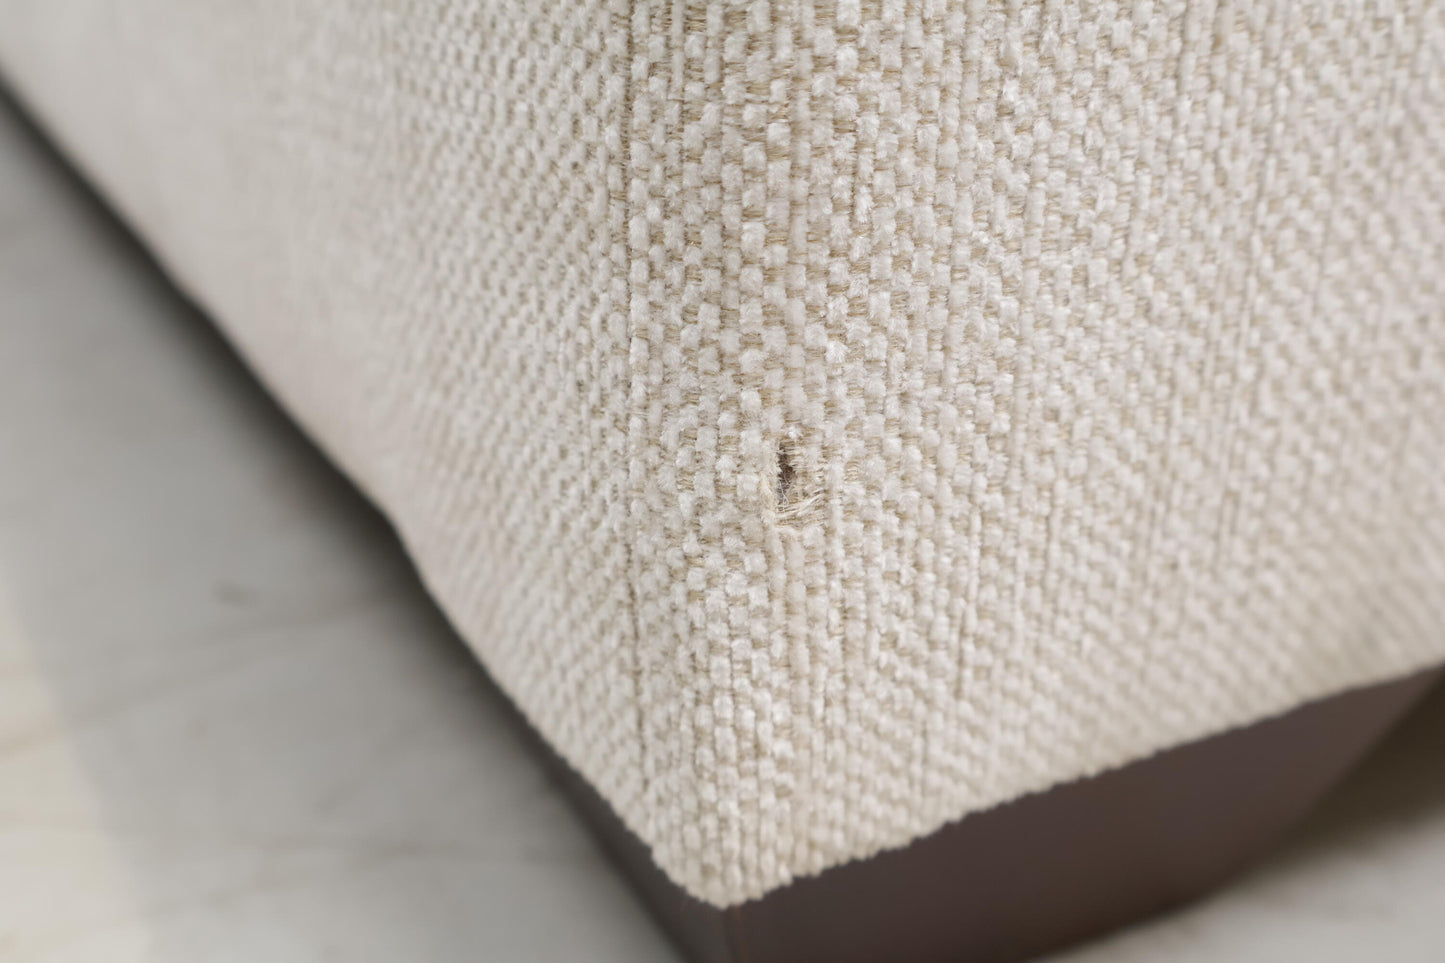 Nyrenset | Hvit Bellus sofa med sjeselong